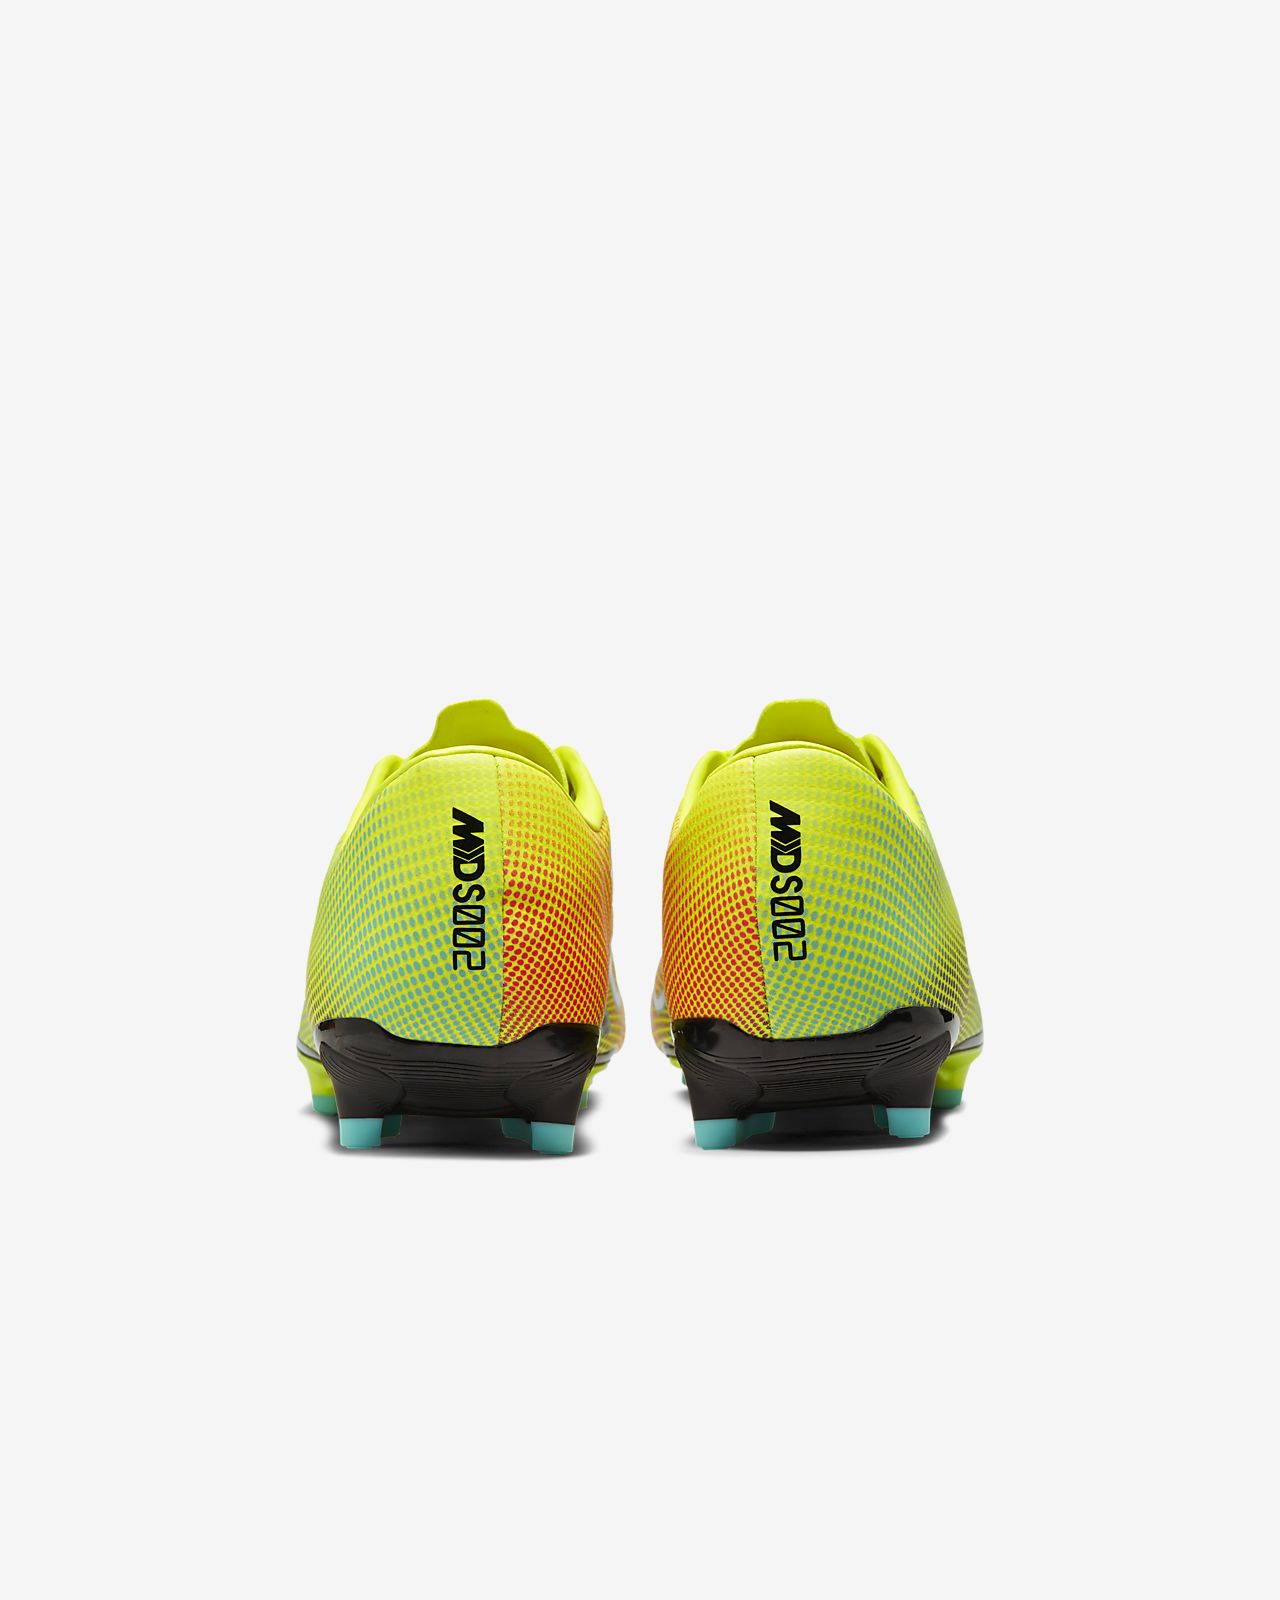 Nike Mercurial Vapor 13 Academy MDS MG Herren yellow.